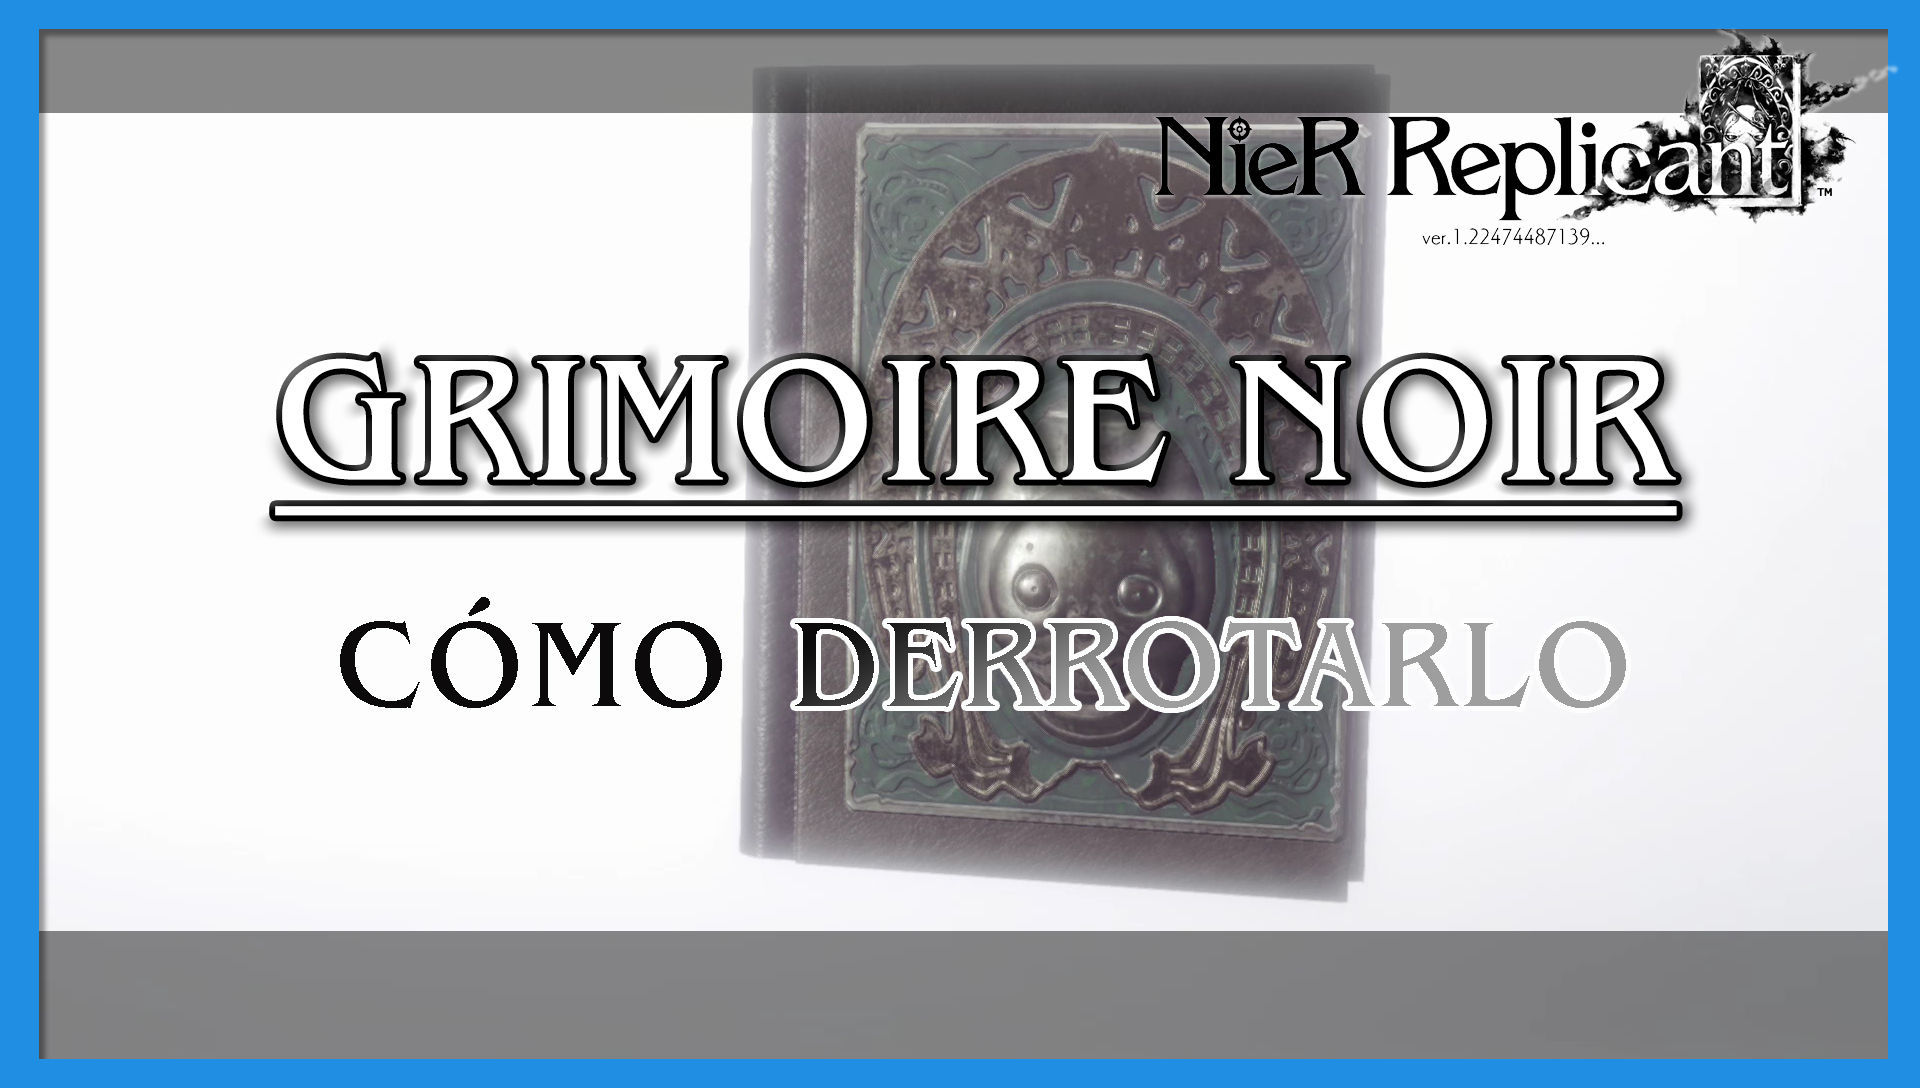 NieR Replicant: Grimoire Noir - Cómo derrotarlo